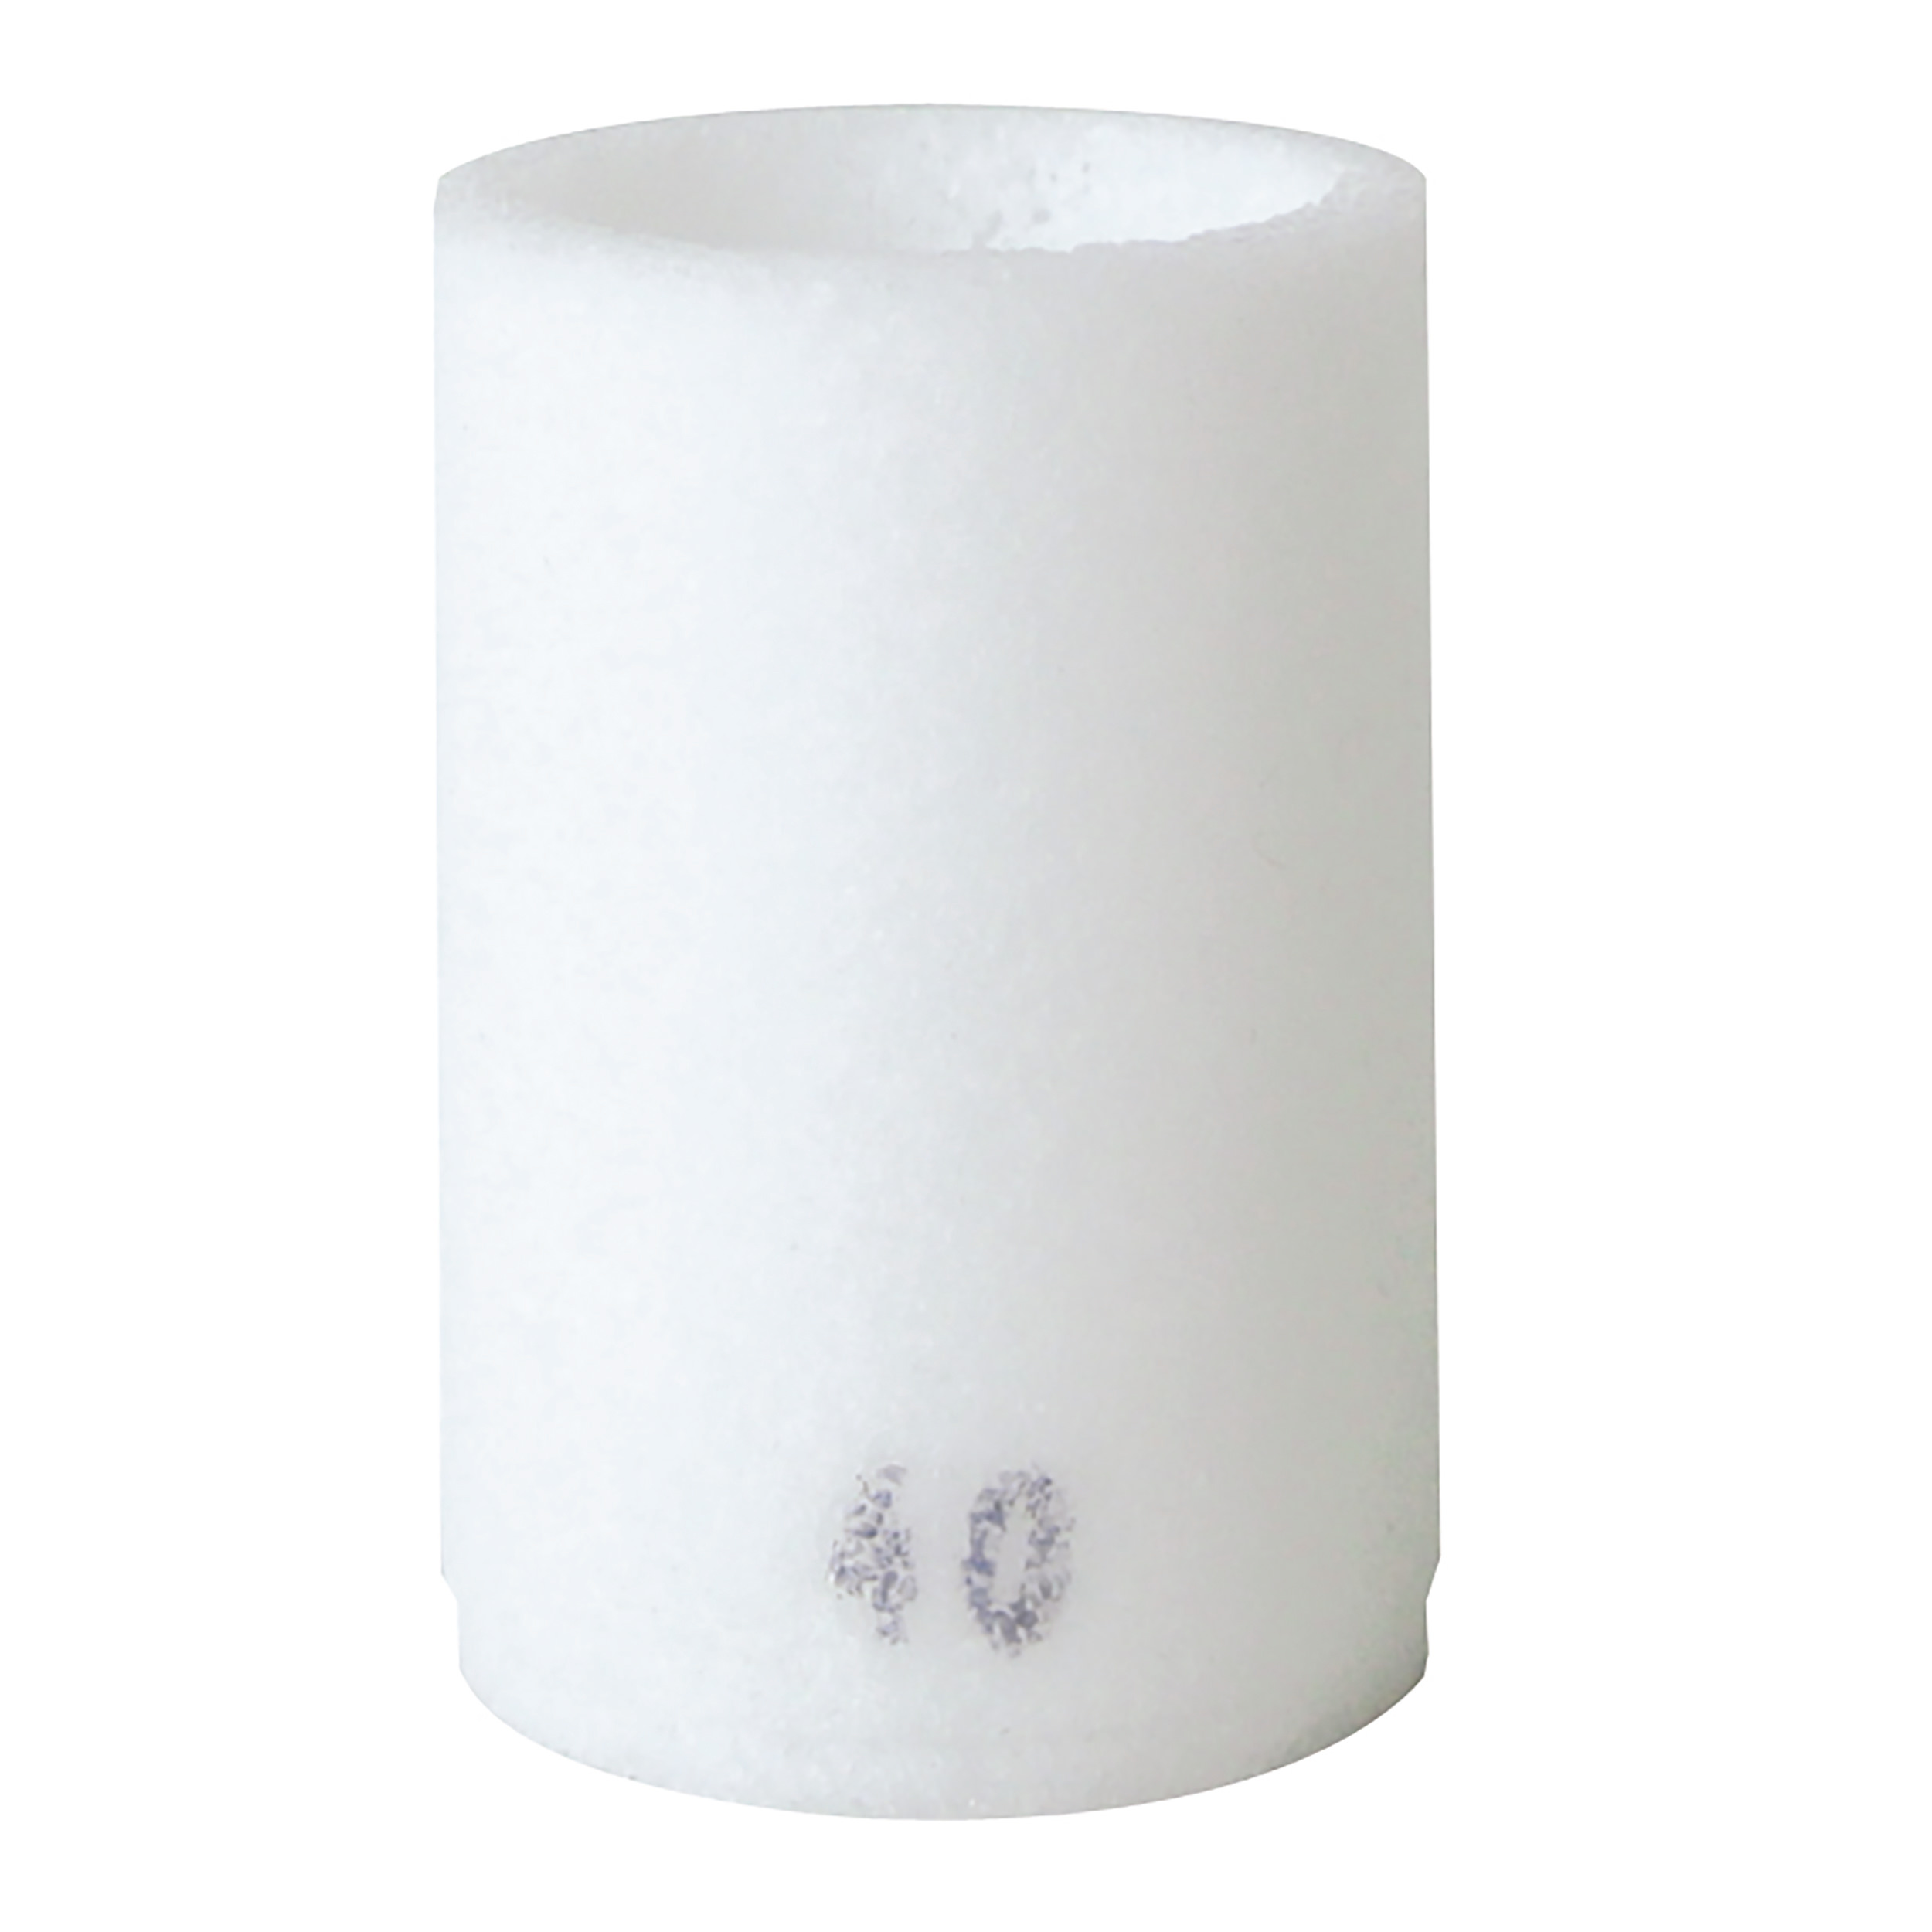 PE-Filter insert variobloc, filter porosity: 5 µm, suitable for: BG 20, BG 30